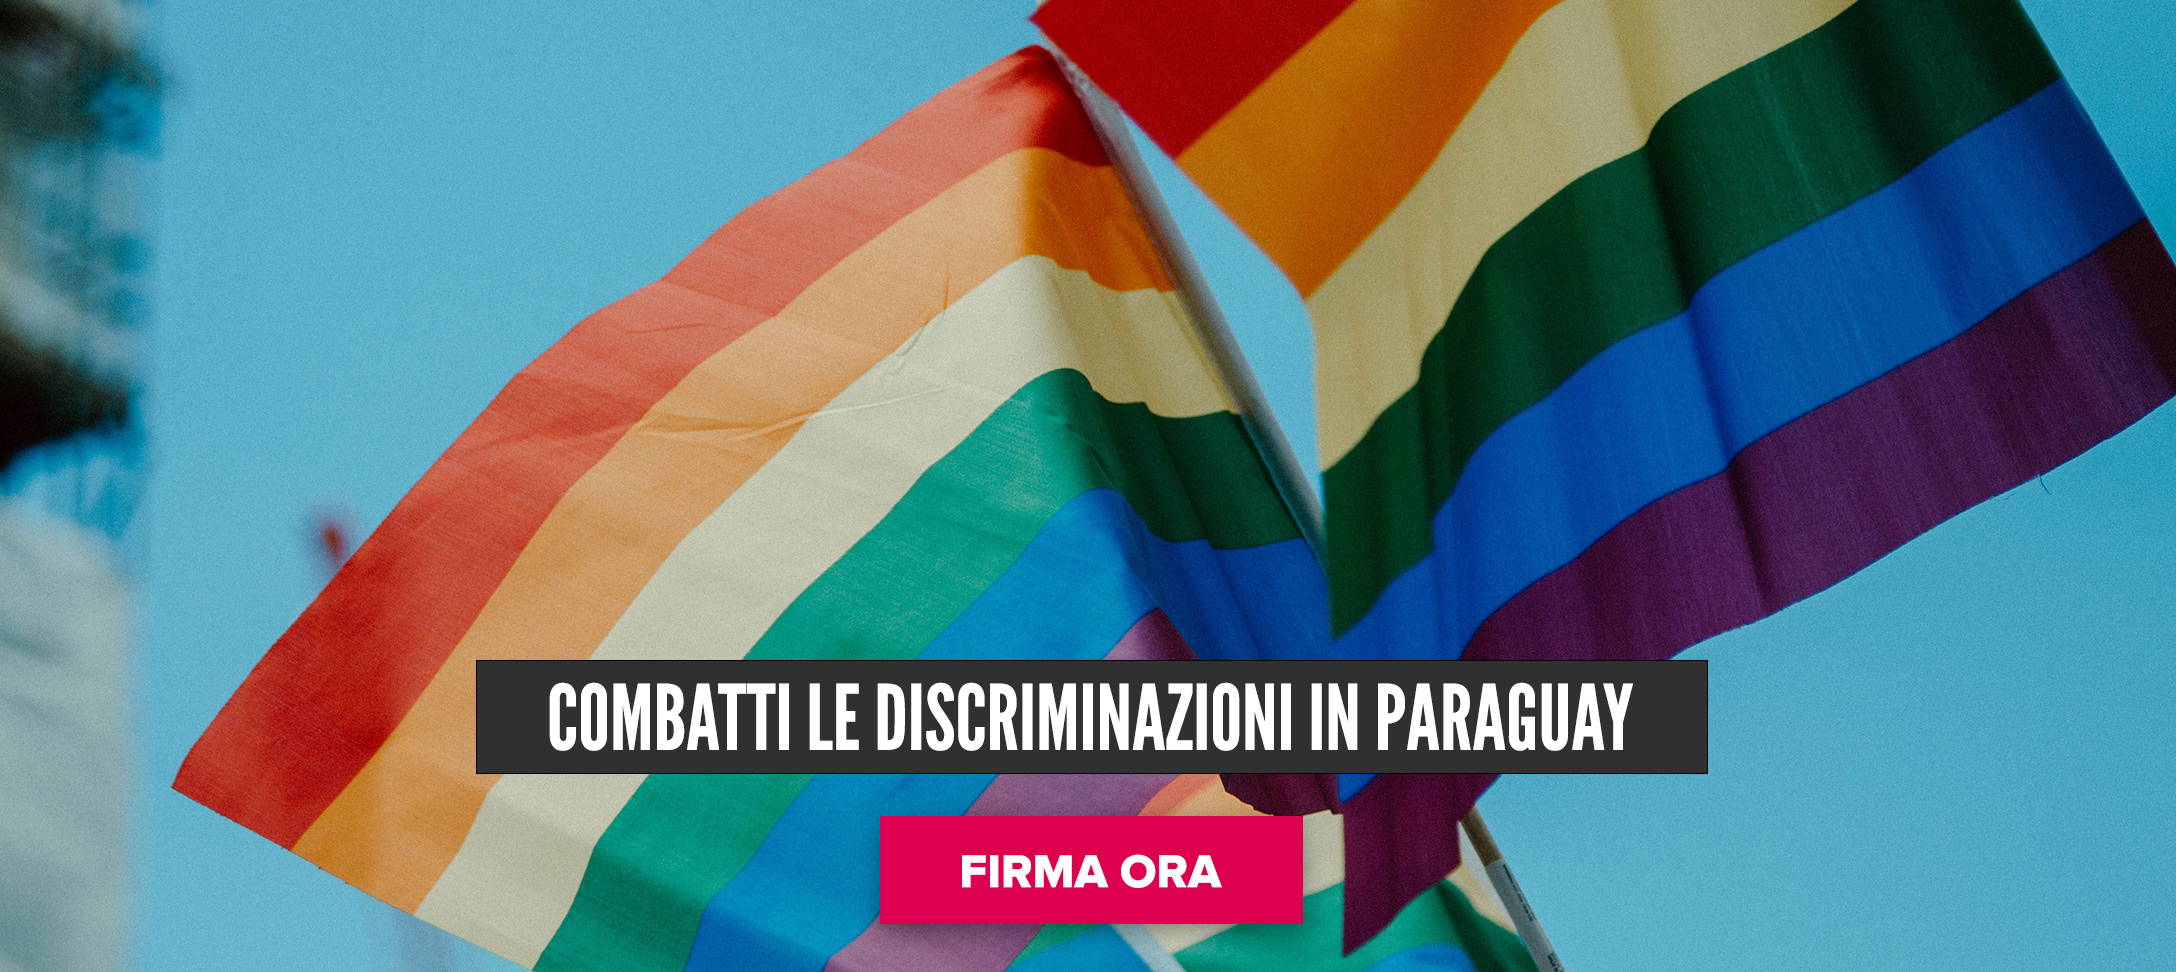 Combatti le discriminazioni in Paraguay